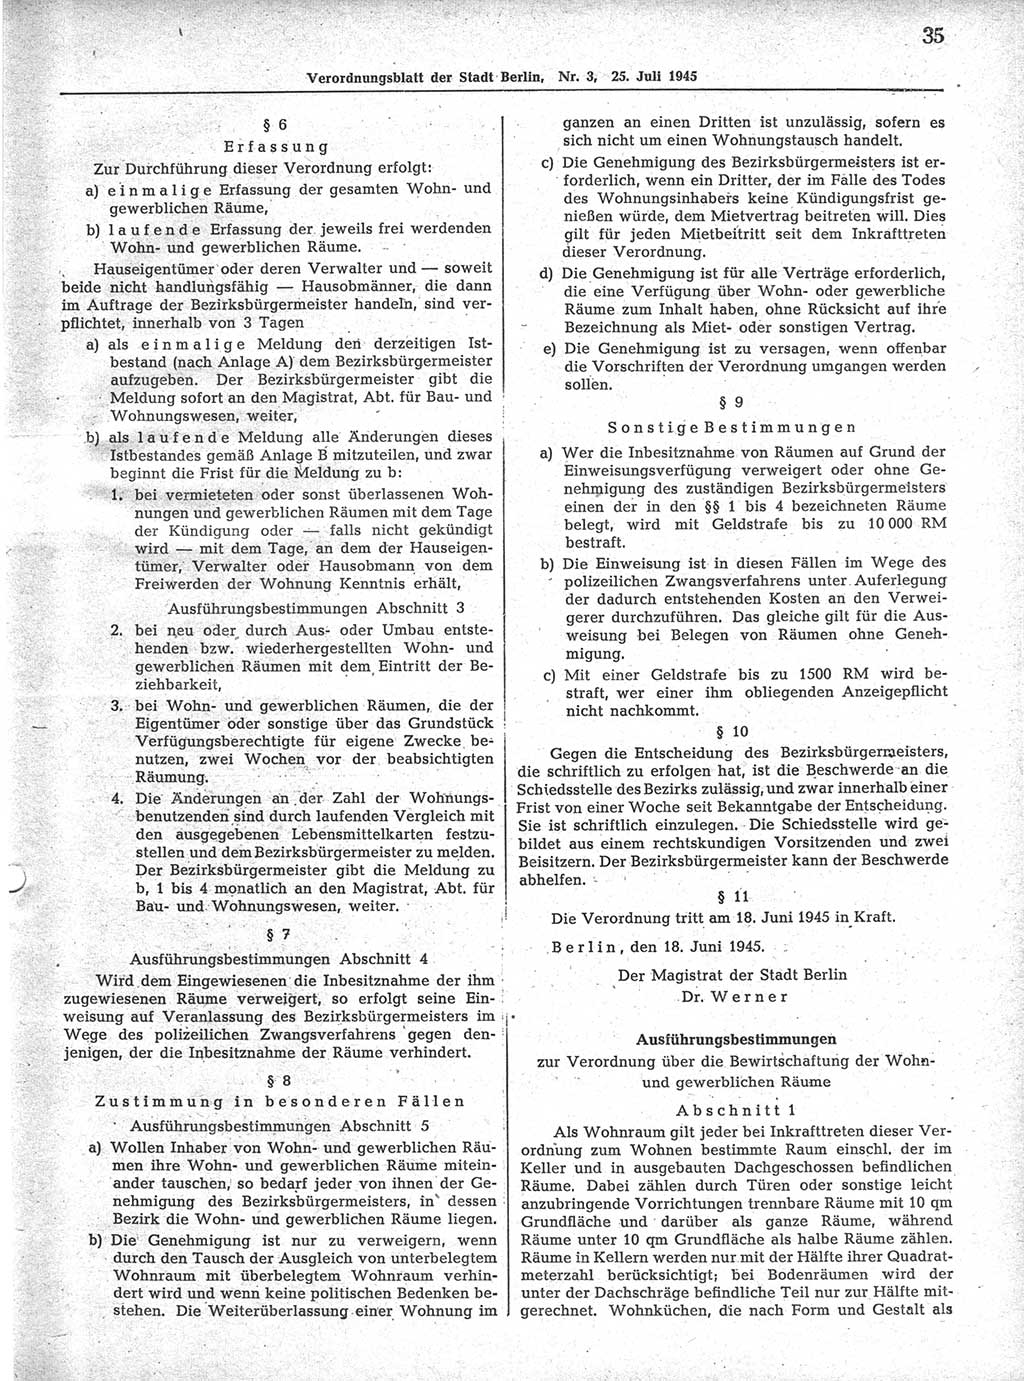 Verordnungsblatt (VOBl.) der Stadt Berlin 1945, Seite 35 (VOBl. Bln. 1945, S. 35)